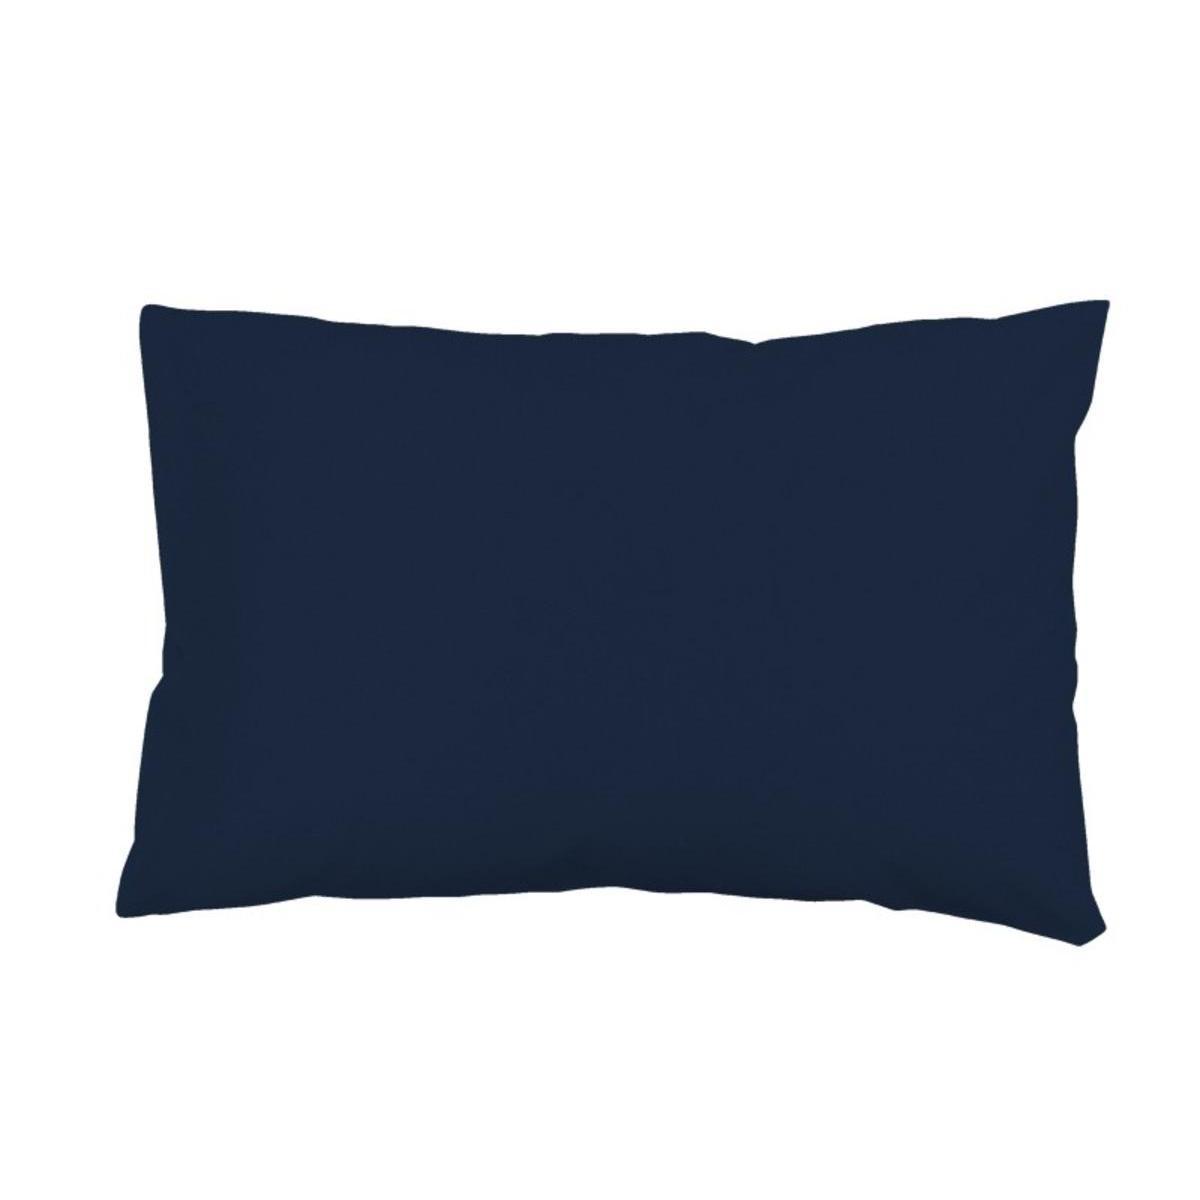 Taie d'oreiller rectangle us - 50 x 75 cm - Bleu marine